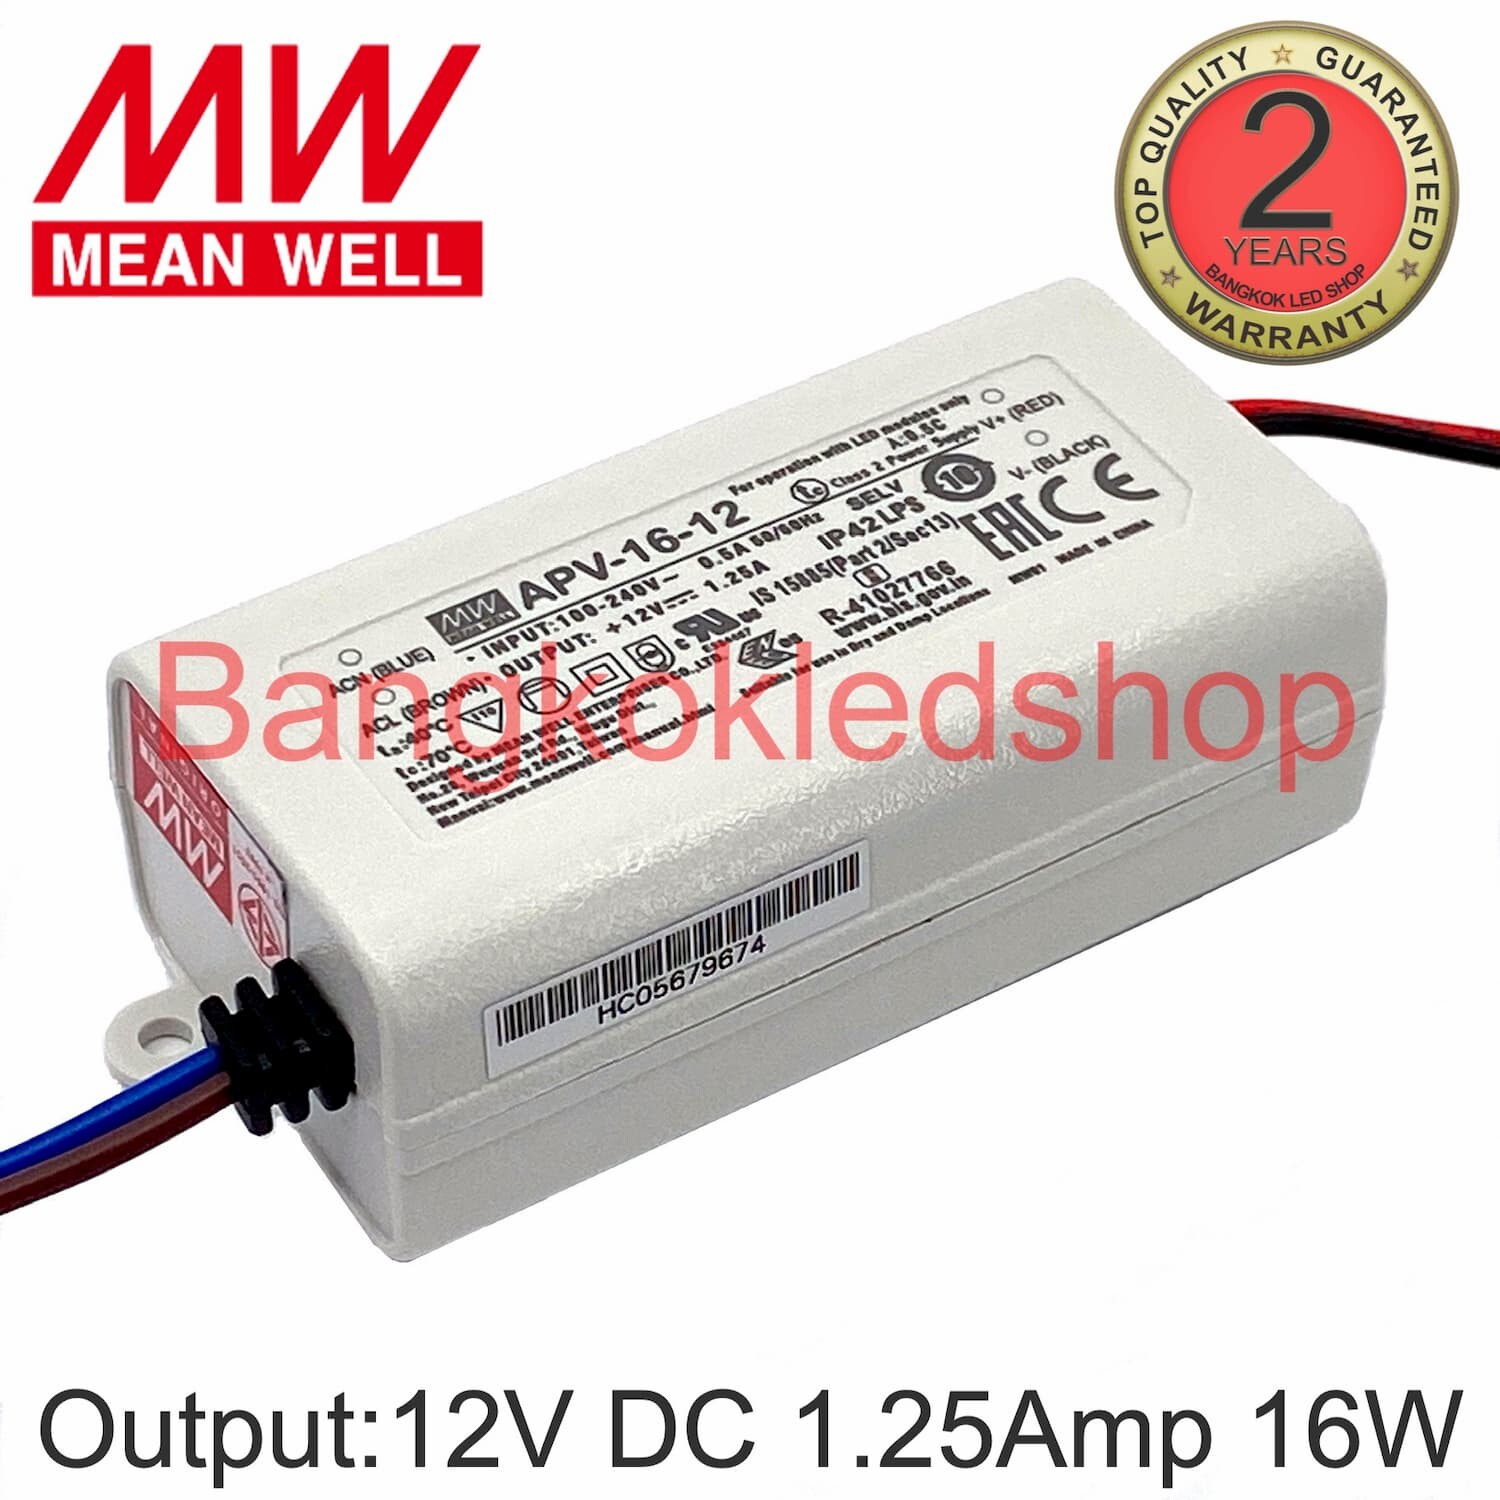 Meanwell apv-16-15 conmutador 15w fuente de alimentación 15v 1a constante tensión 855881